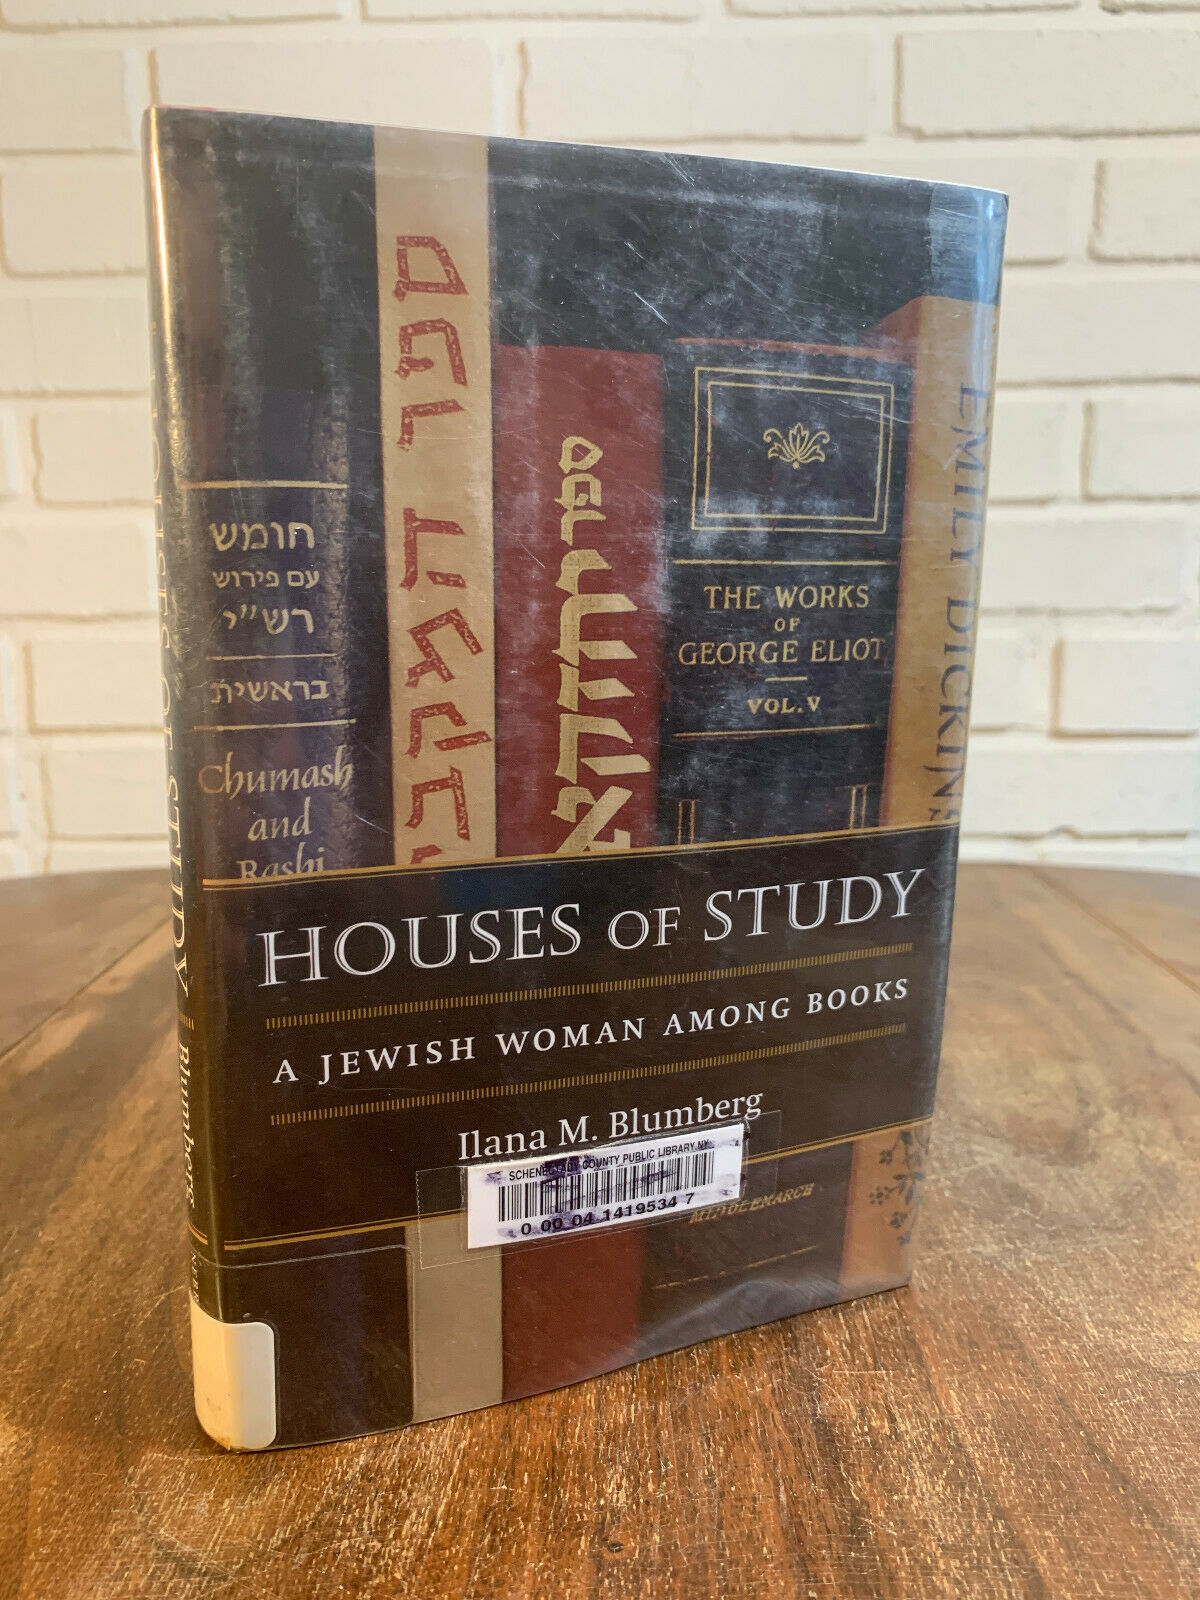 Houses of Study: A Jewish Woman Among Books by Ilana M. Blumberg [2007]